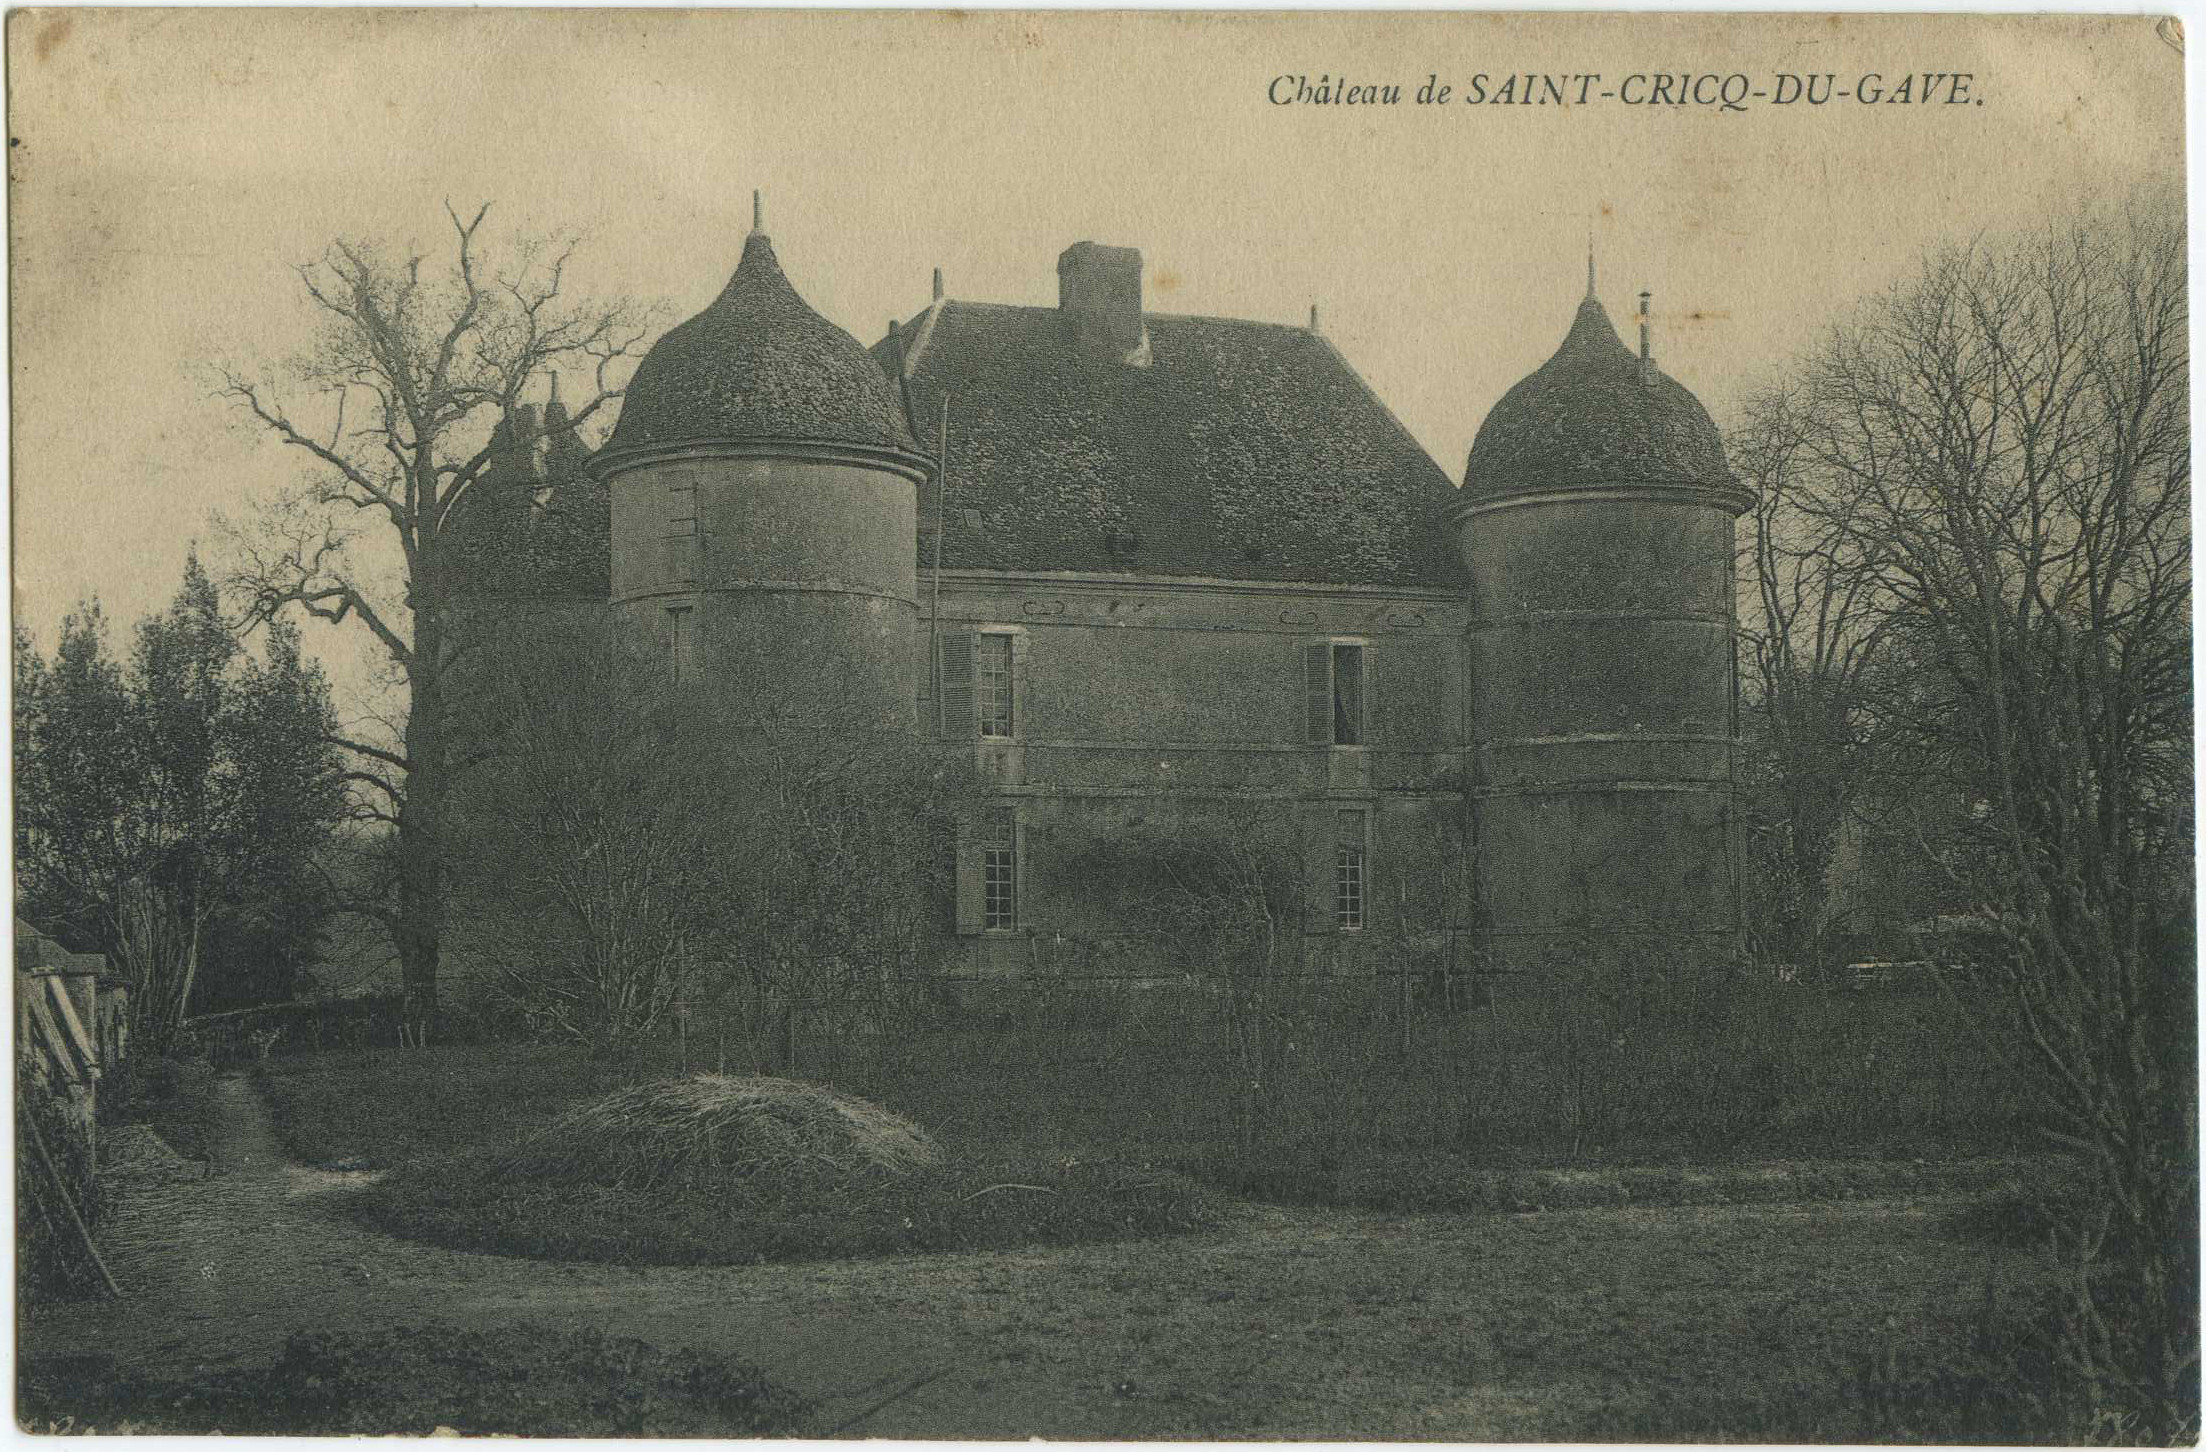 Saint-Cricq-du-Gave - Château de SAINT-CRICQ-DU-GAVE.